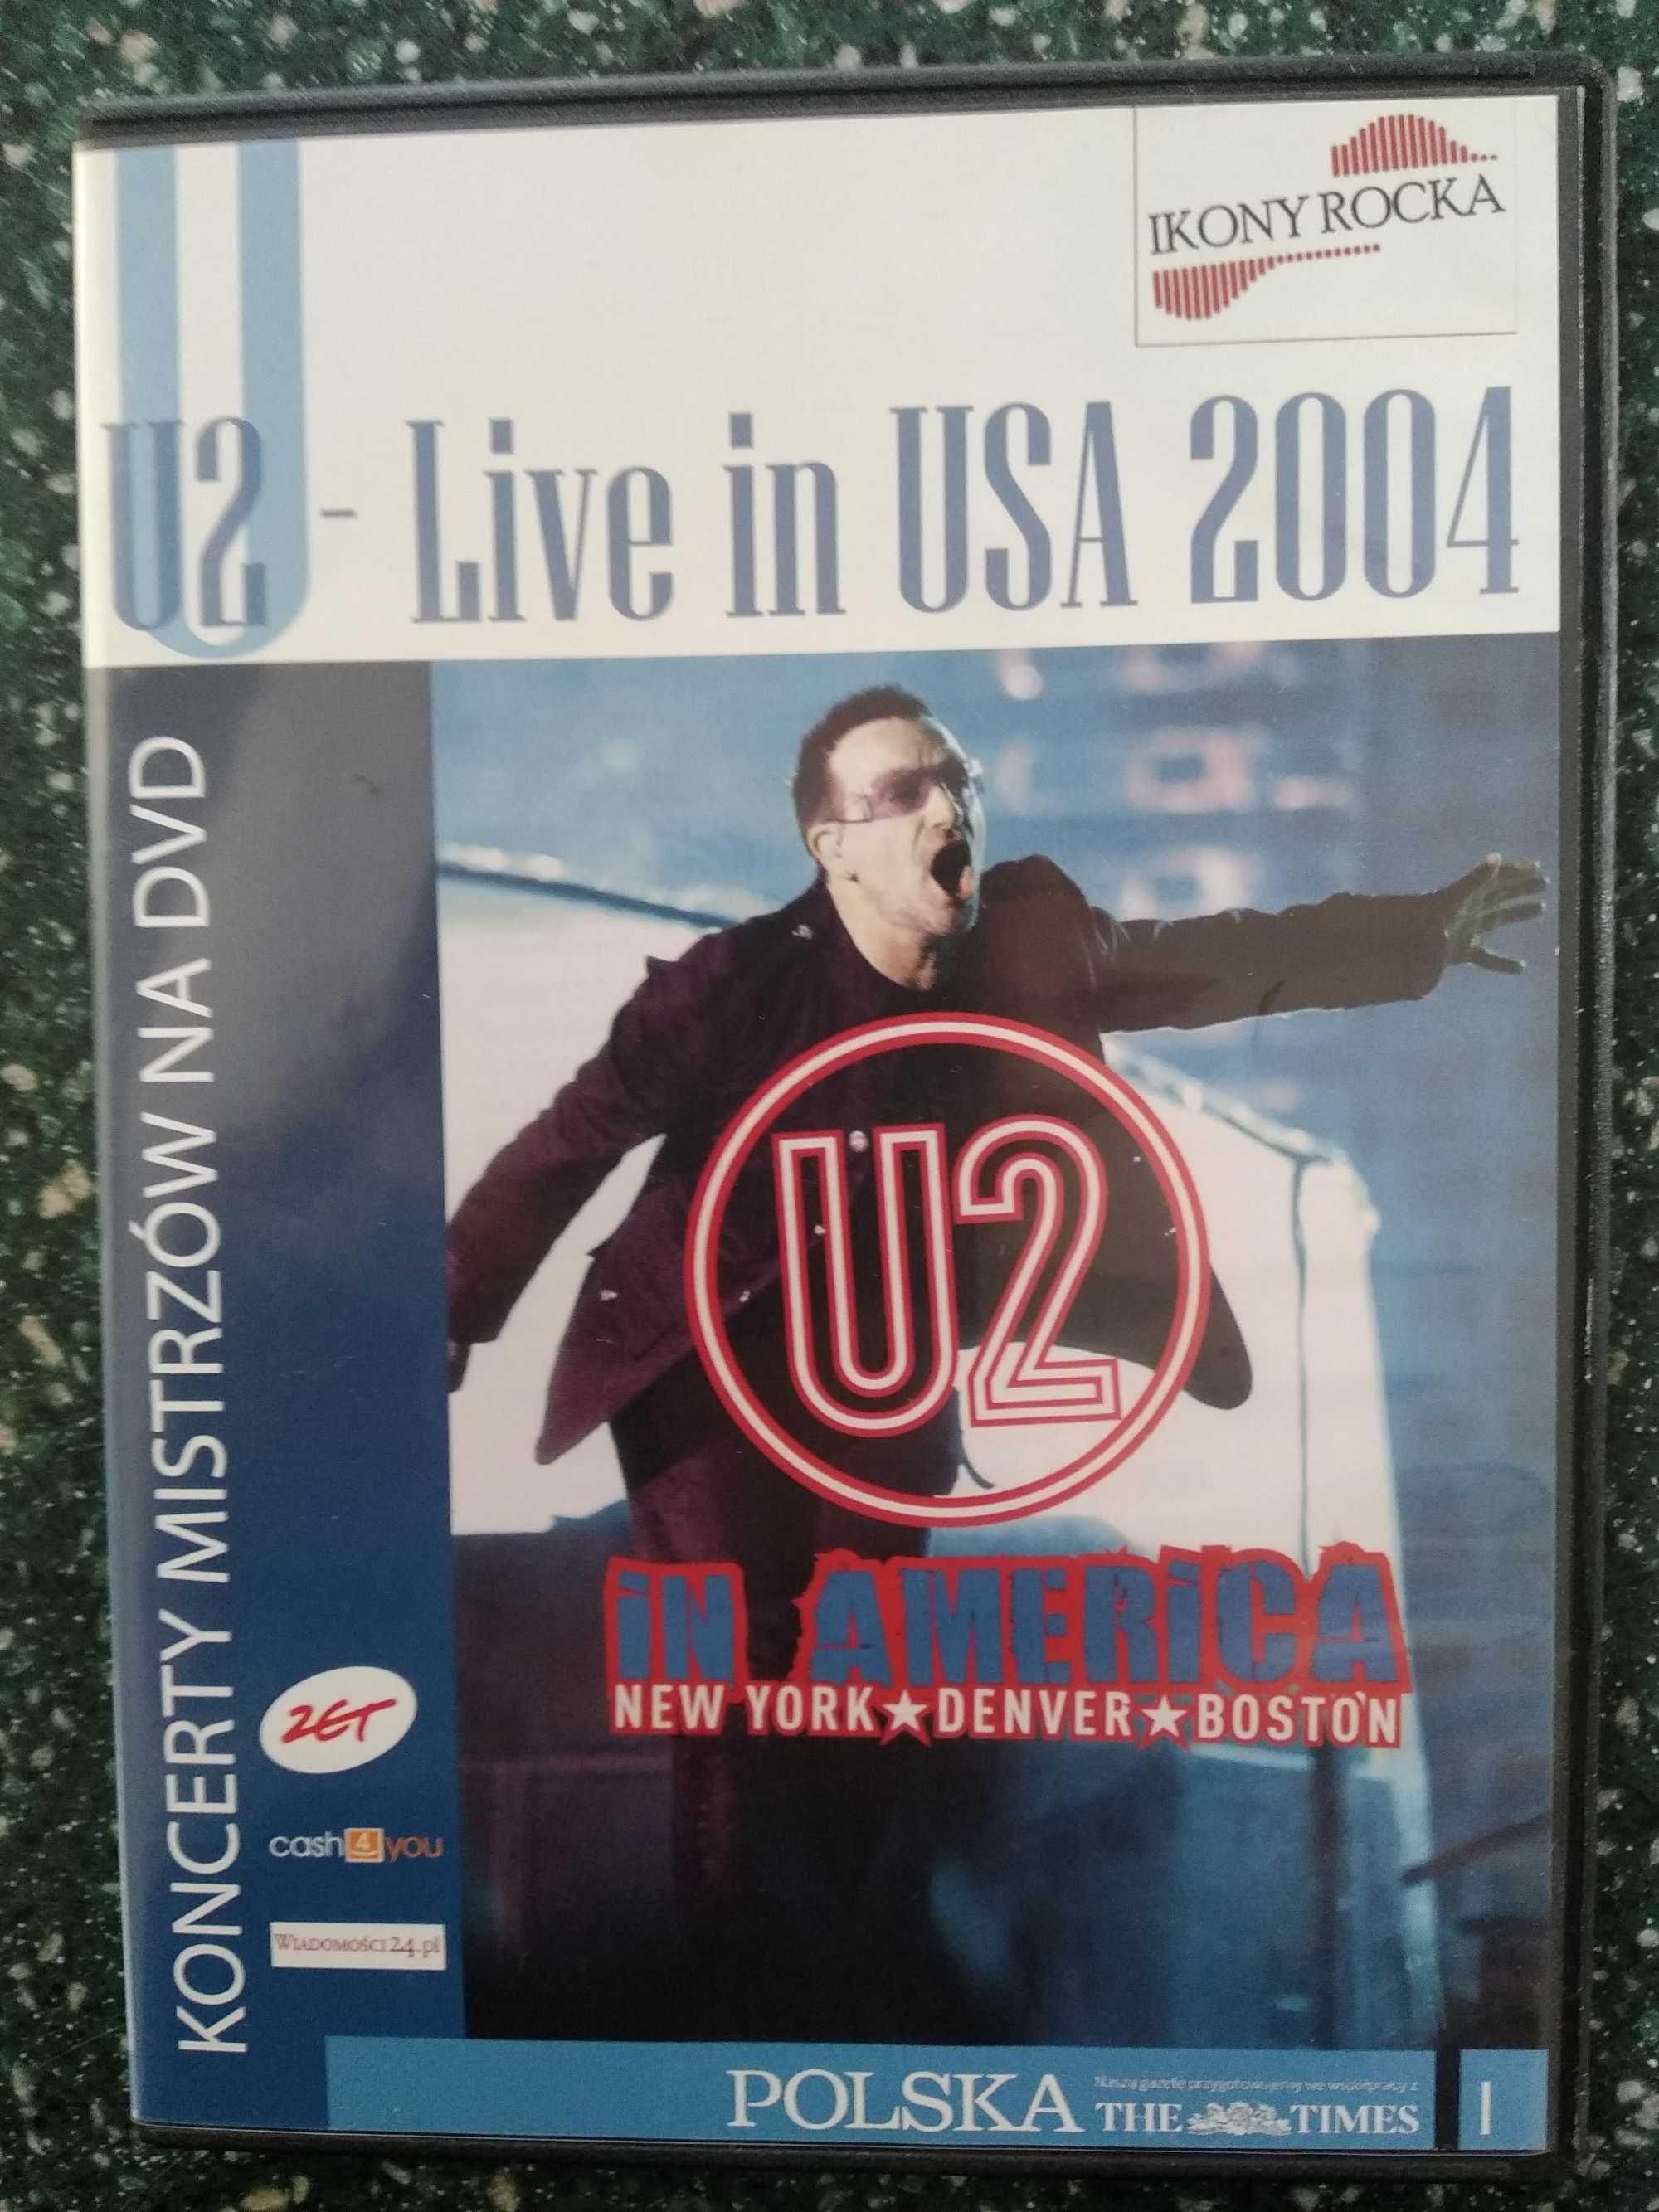 U2 - live in USA 2004